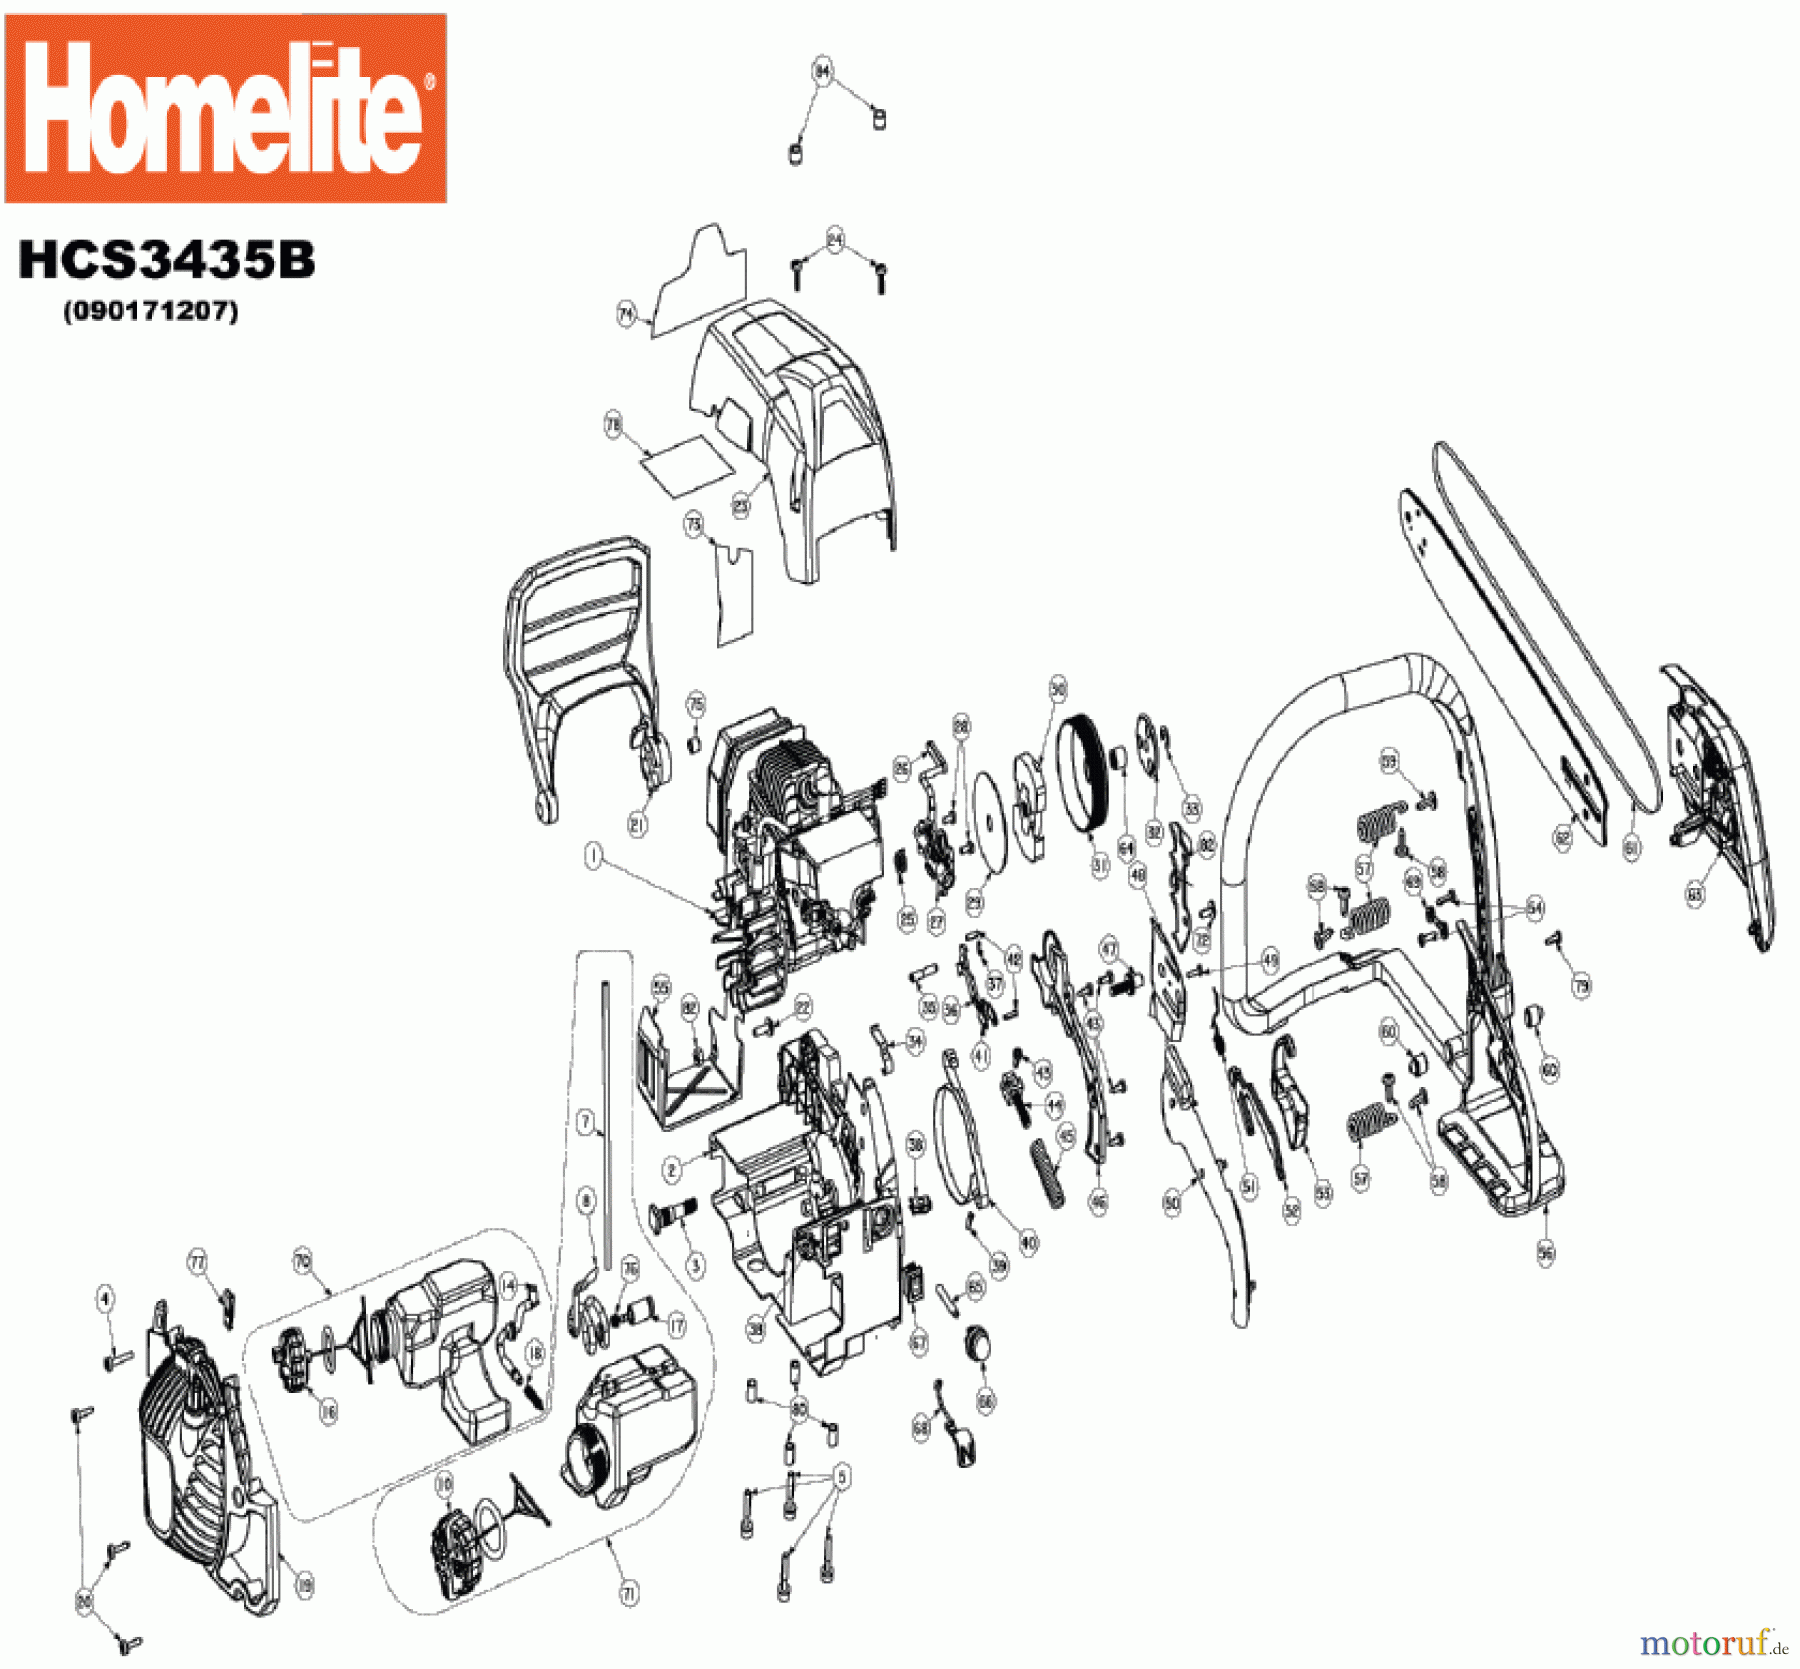  Homelite Motorsägen Benzin HCS3435B Seite 1